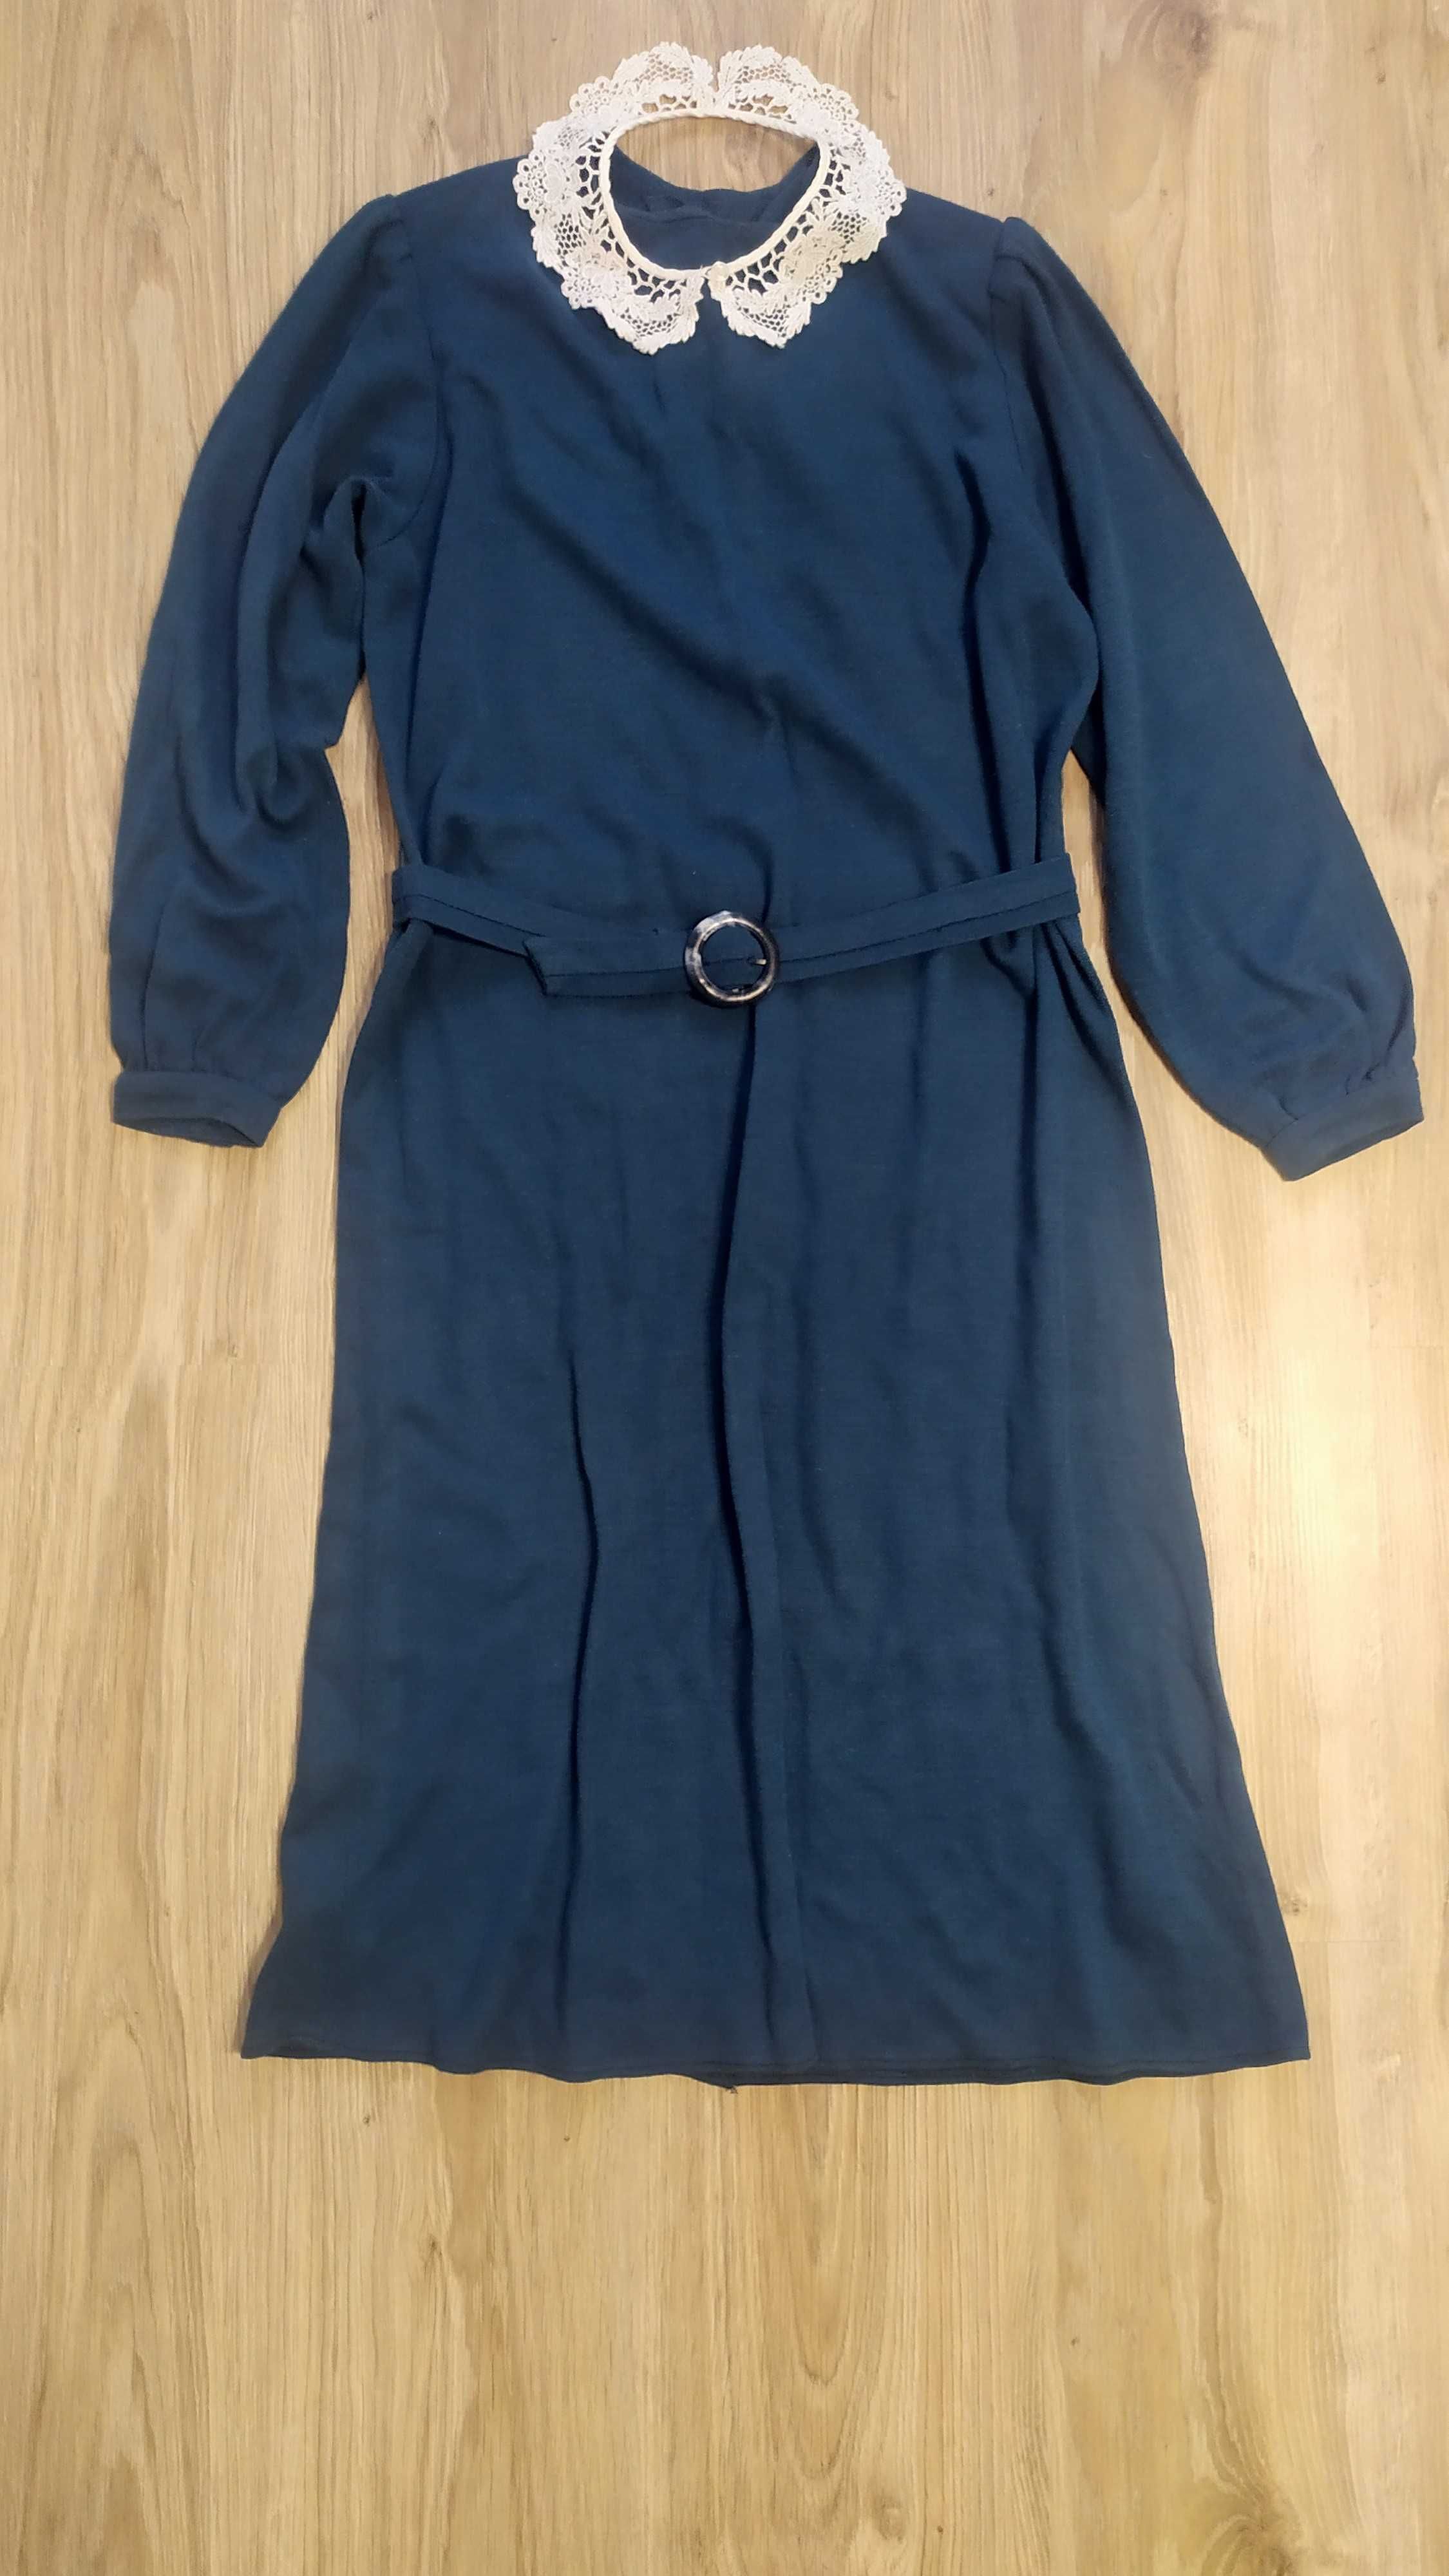 Morska sukienka za kolana długi rękaw bawełna z paskiem r. 40 +gratis